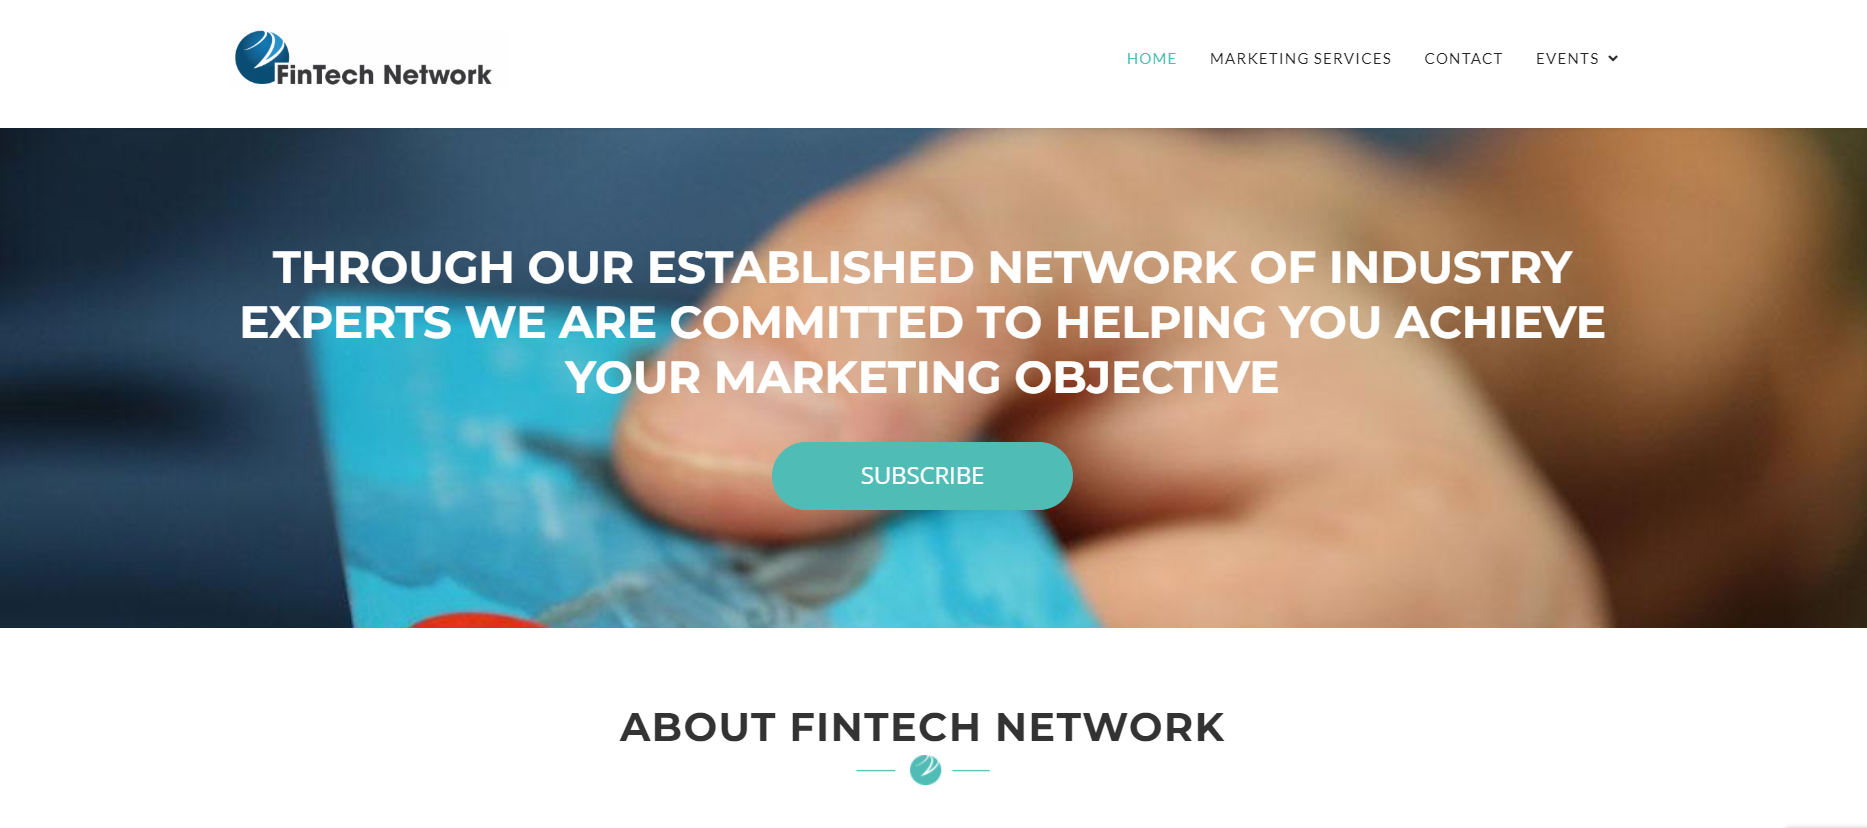 FinTech Network